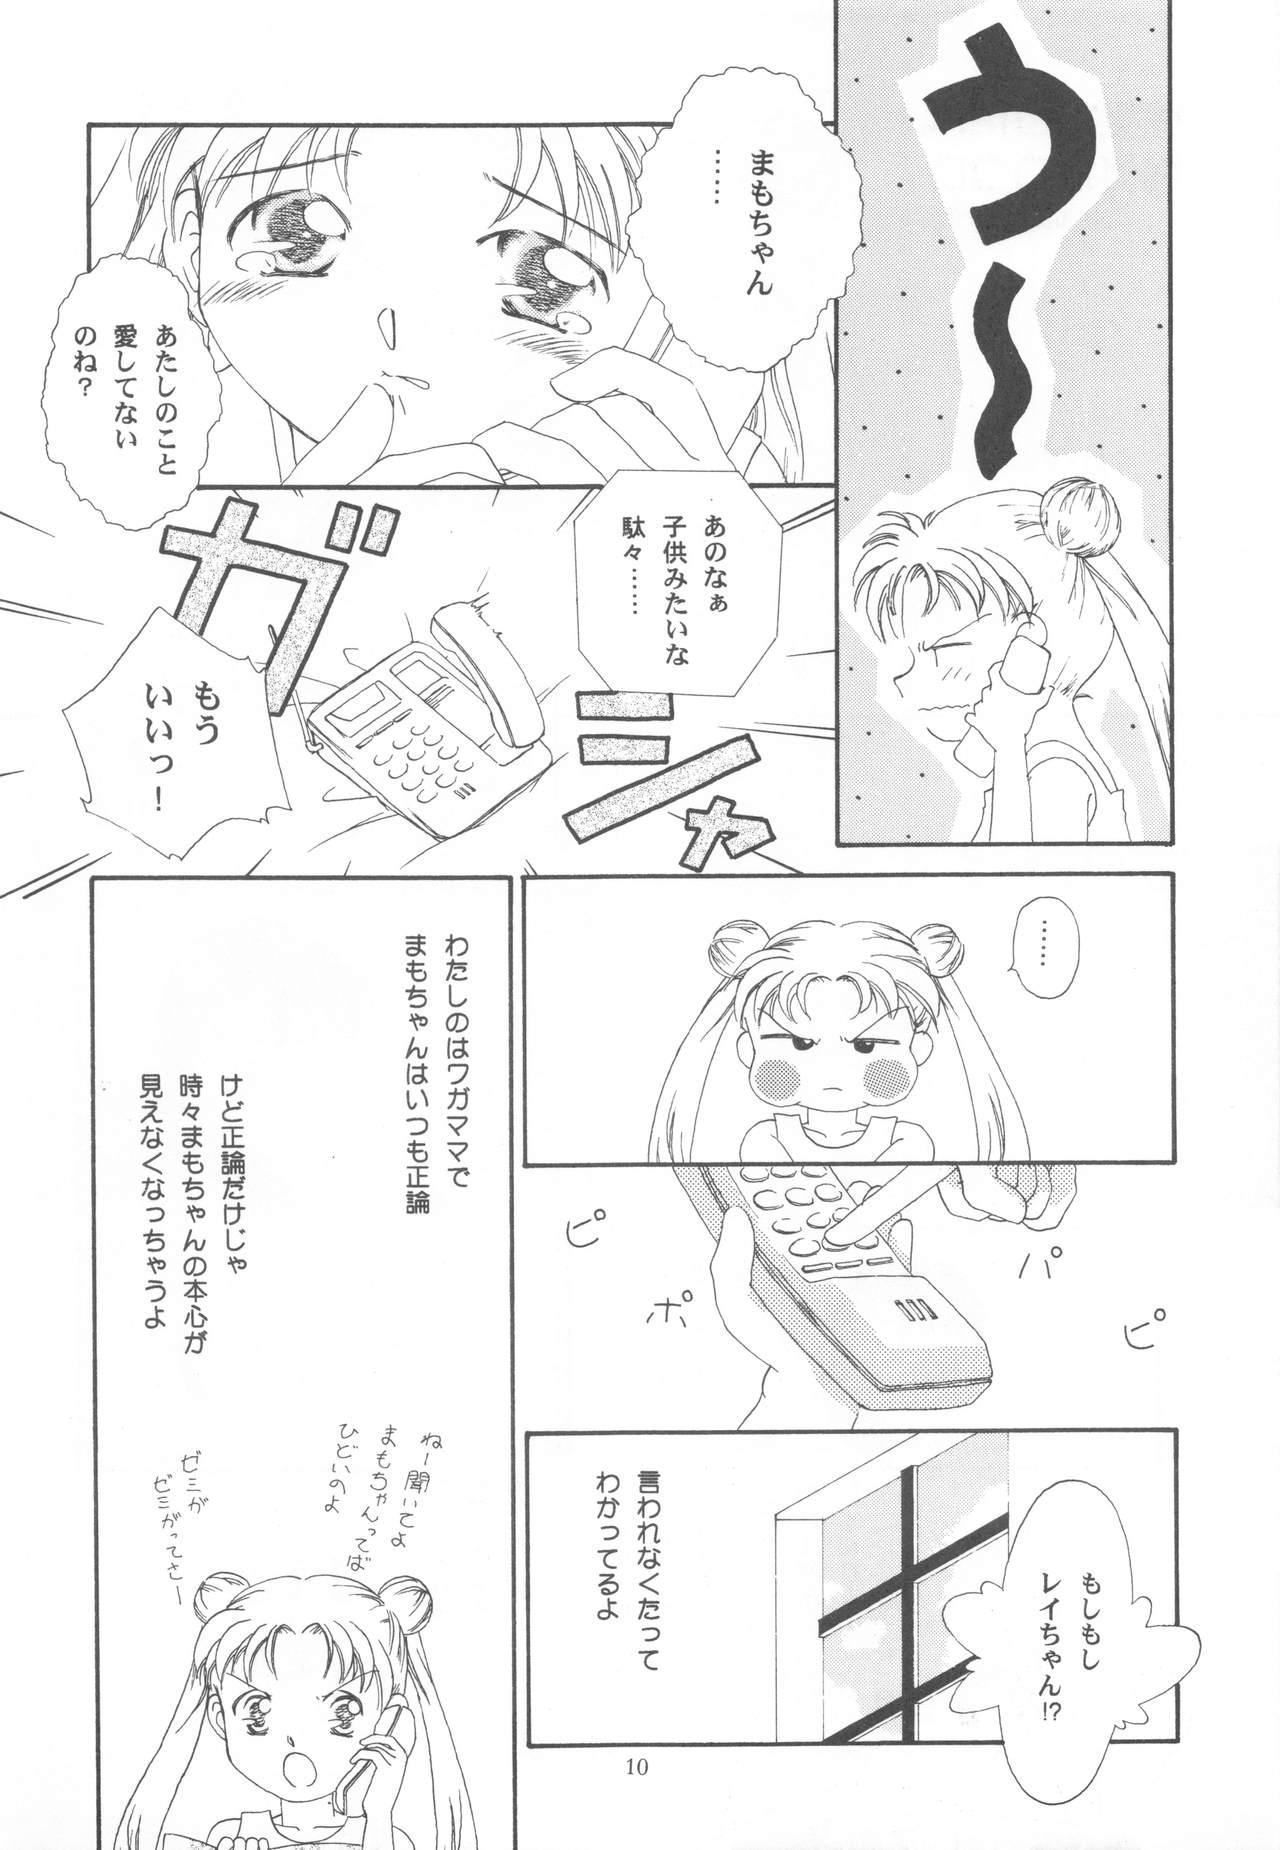 Prima Be My Diamond! - Sailor moon Para - Page 9